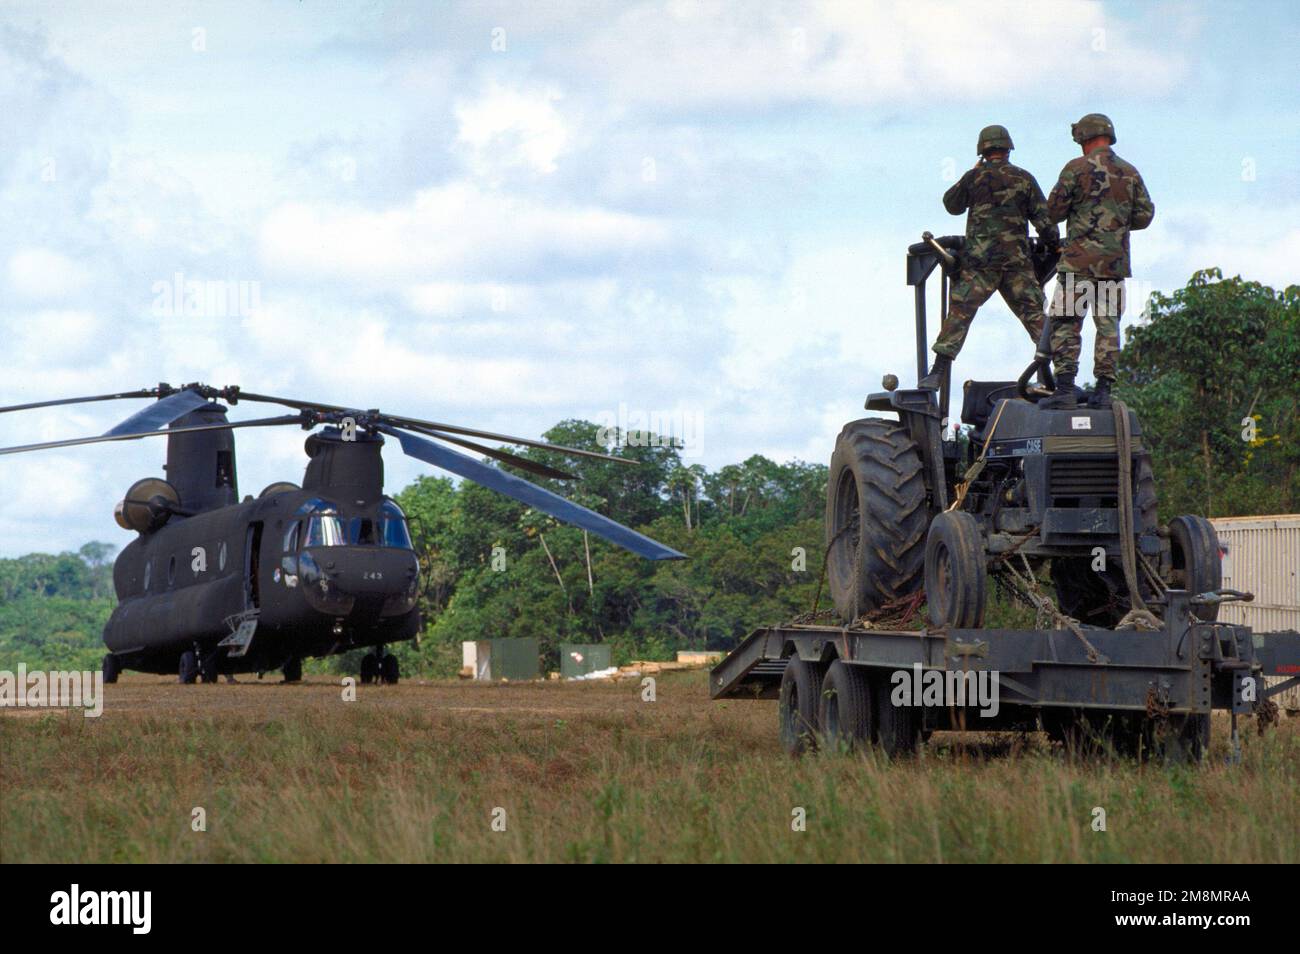 IL SENIOR AIRMAN Michael Hafstad e IL SENIOR AIRMAN Adrian Faison, entrambi ingegneri strutturali dello Squadrone a cavalli rossi del 820th, la base dell'aeronautica militare di Nellis, Nevada, si trovano in cima a un trattore su un rimorchio che verrà caricato sull'elicottero CH-47 Chinook in background. Il CH-47 ridistribuirà le attrezzature da Kumaka a Camp Stephenson, Timehri Guyana. Il 820th, è stato a Kumaka per rinnovare l'ospedale regionale esistente come parte di questo primo esercizio combinato di assistenza umanitaria e civile condotto tra gli Stati Uniti e la Guyana. Personale militare dell'Aeronautica militare, della Riserva dell'Aeronautica Foto Stock